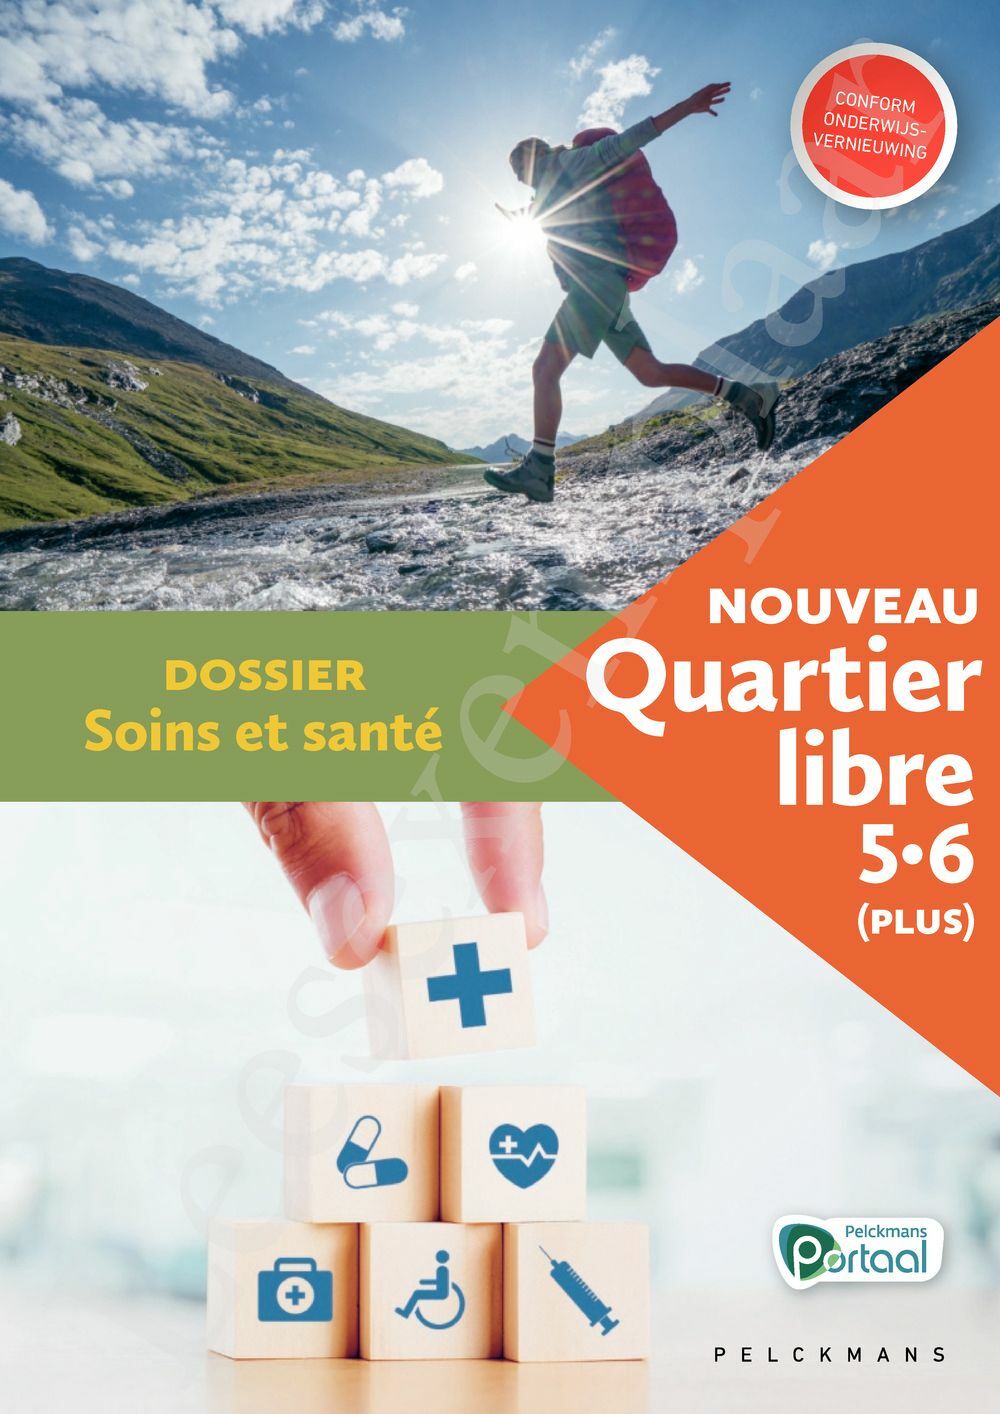 Preview: Nouveau Quartier libre 5 / 6 (Plus) Dossier Soins et santé (incl. Pelckmans Portaal)